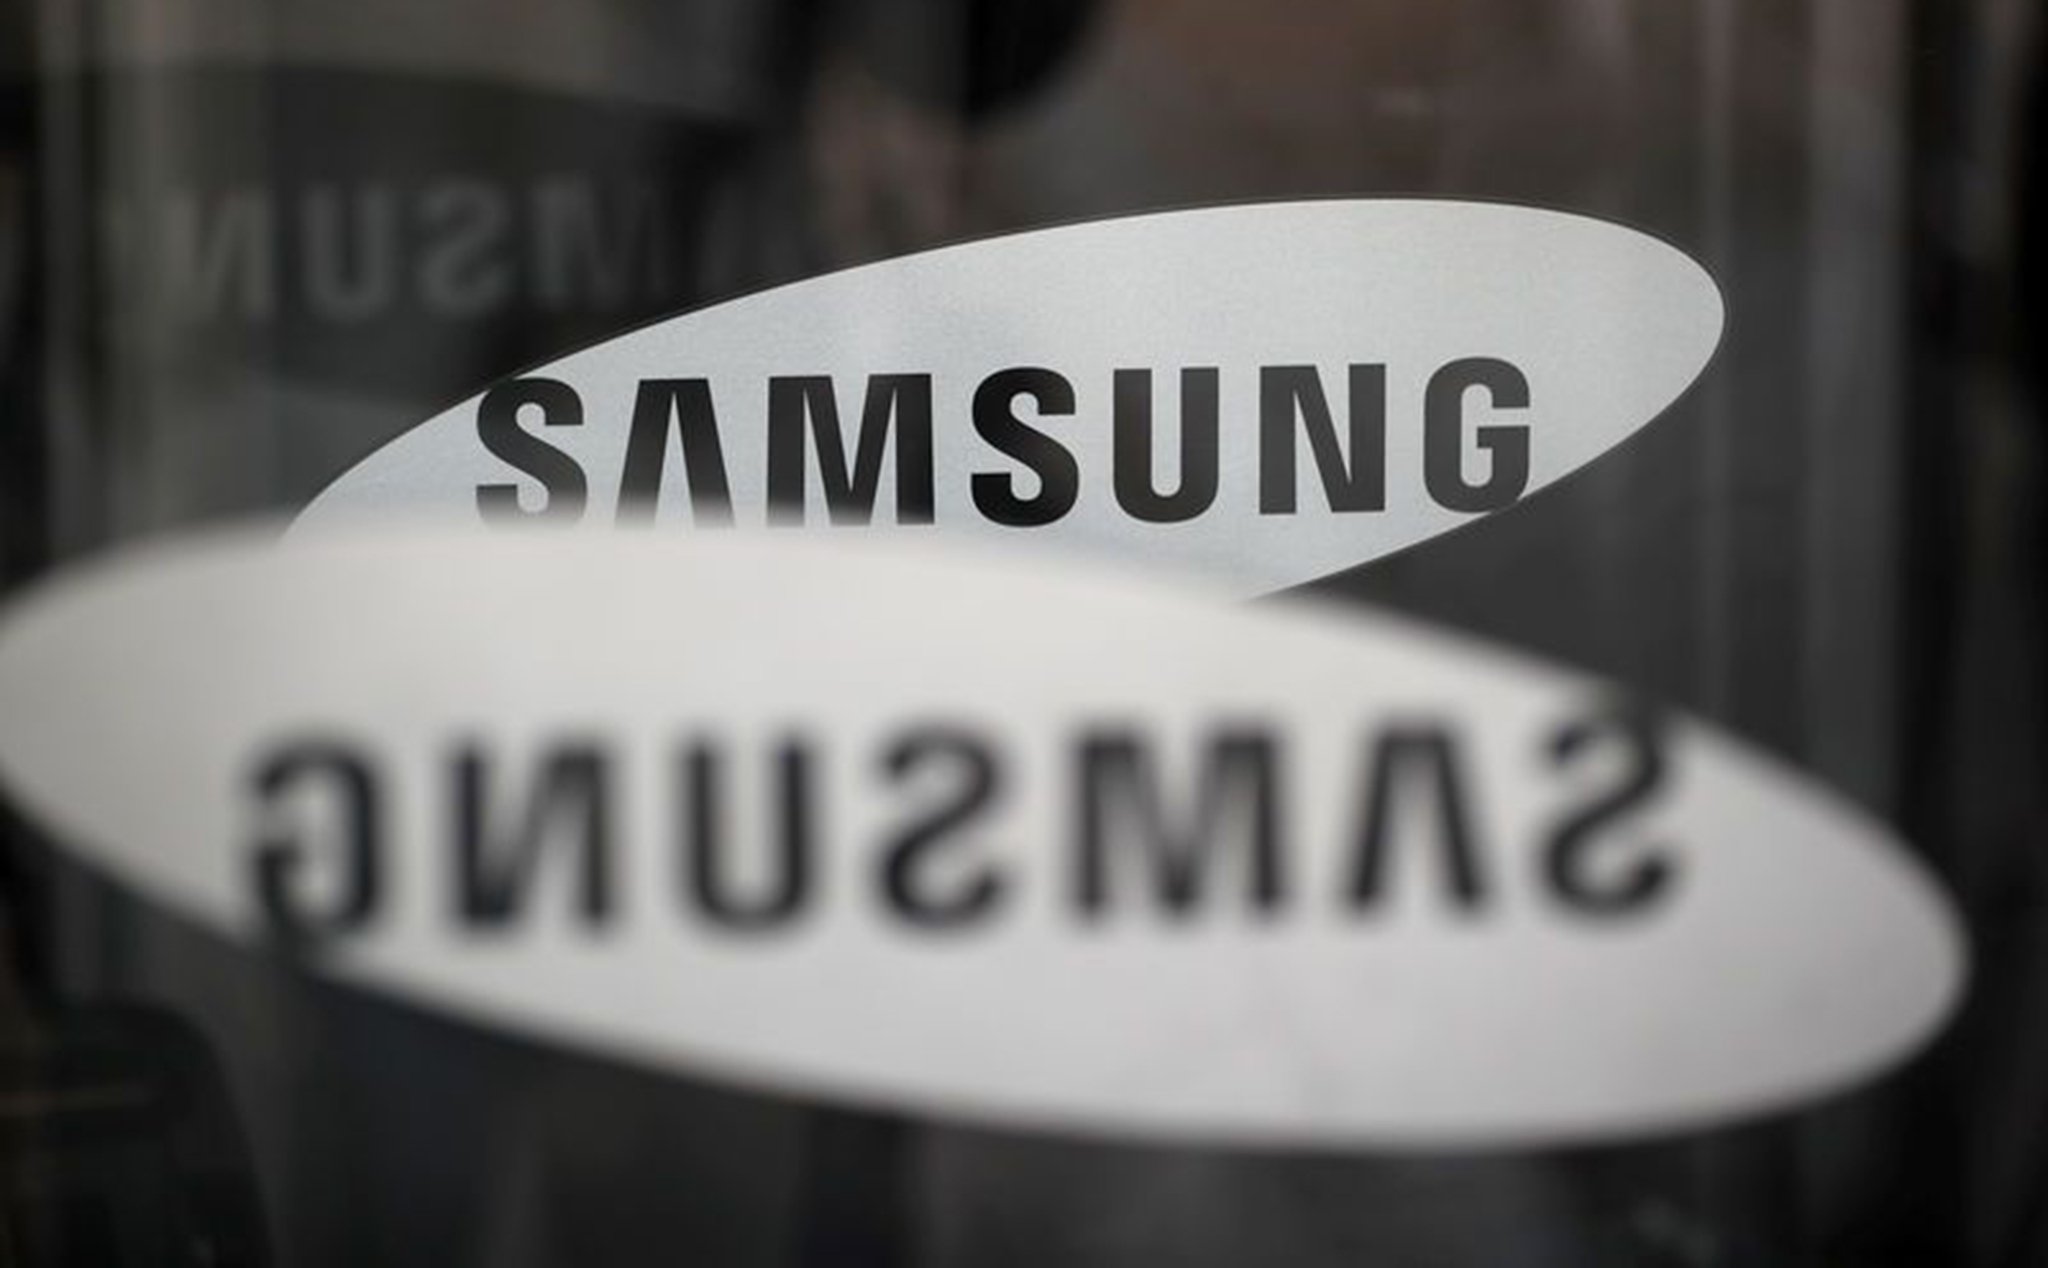 Chỉ còn dưới 1% thị phần tại Trung Quốc, Samsung đang xem xét đóng cửa nhà máy tại đây